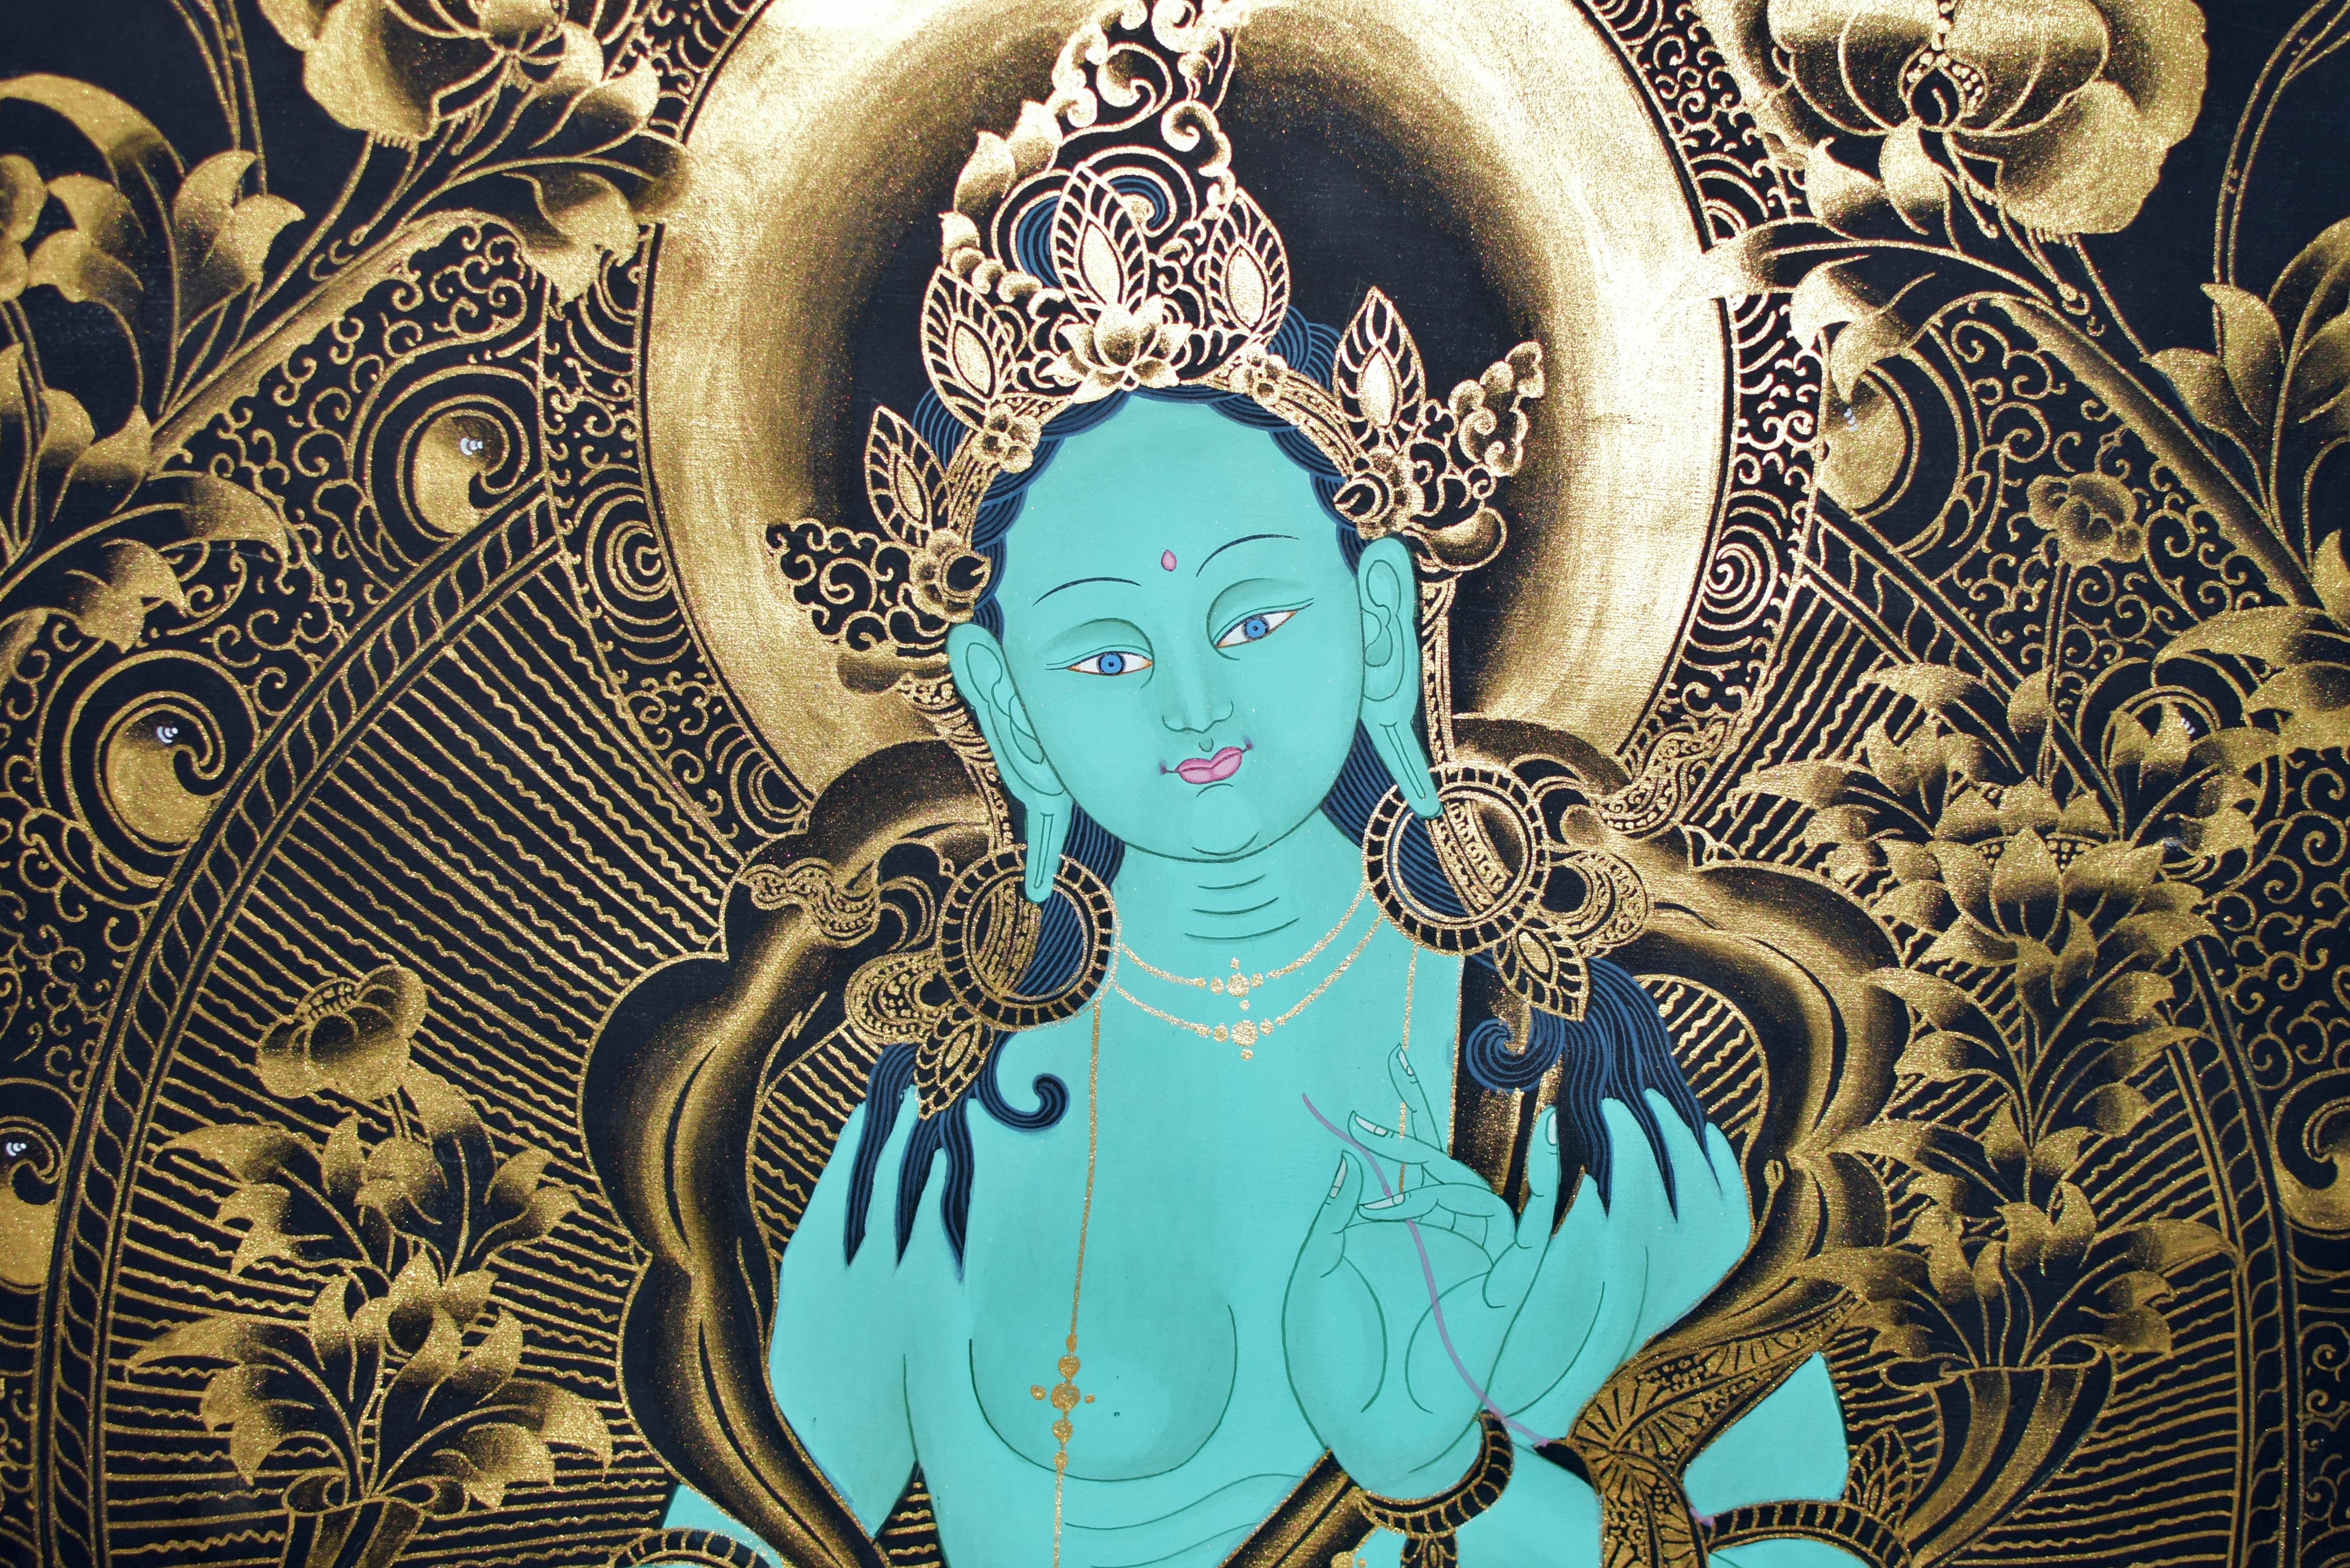 Ein außergewöhnliches handgemaltes tibetisches Thangka, das die Göttin des größten Mitgefühls, die Grüne Tara, darstellt. Ihr rundes Gesicht mit großen, freundlichen Augen, über geschlossenen Lippen, flankiert von langen, hängenden Ohrläppchen. Sie